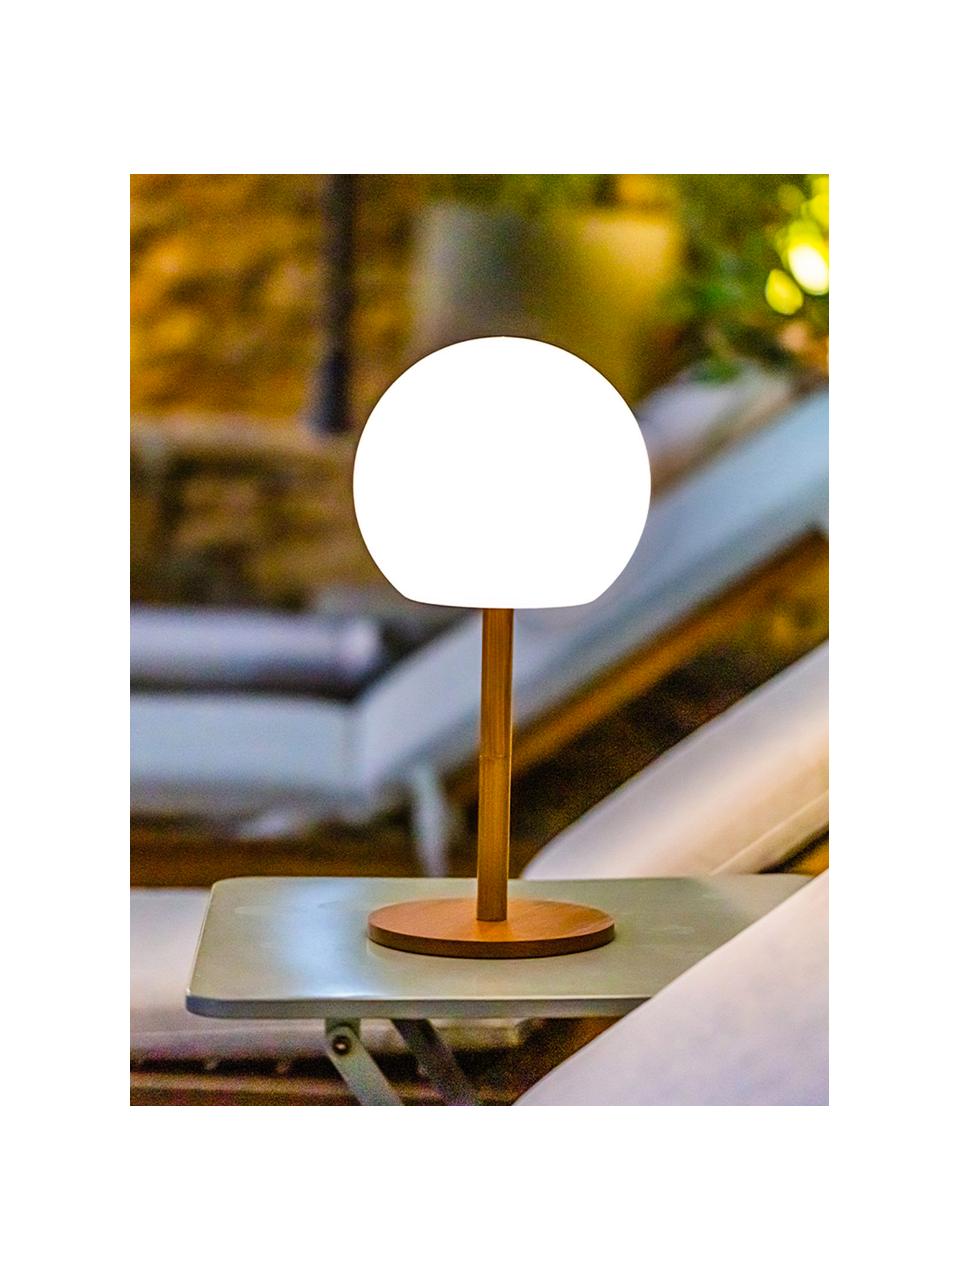 Mobile dimmbare LED-Außentischlampe Luny mit Bambusfuß, Lampenschirm: Polyethylen, Lampenfuß: Bambus, Weiß, Hellbraun, Ø 13 x H 28 cm